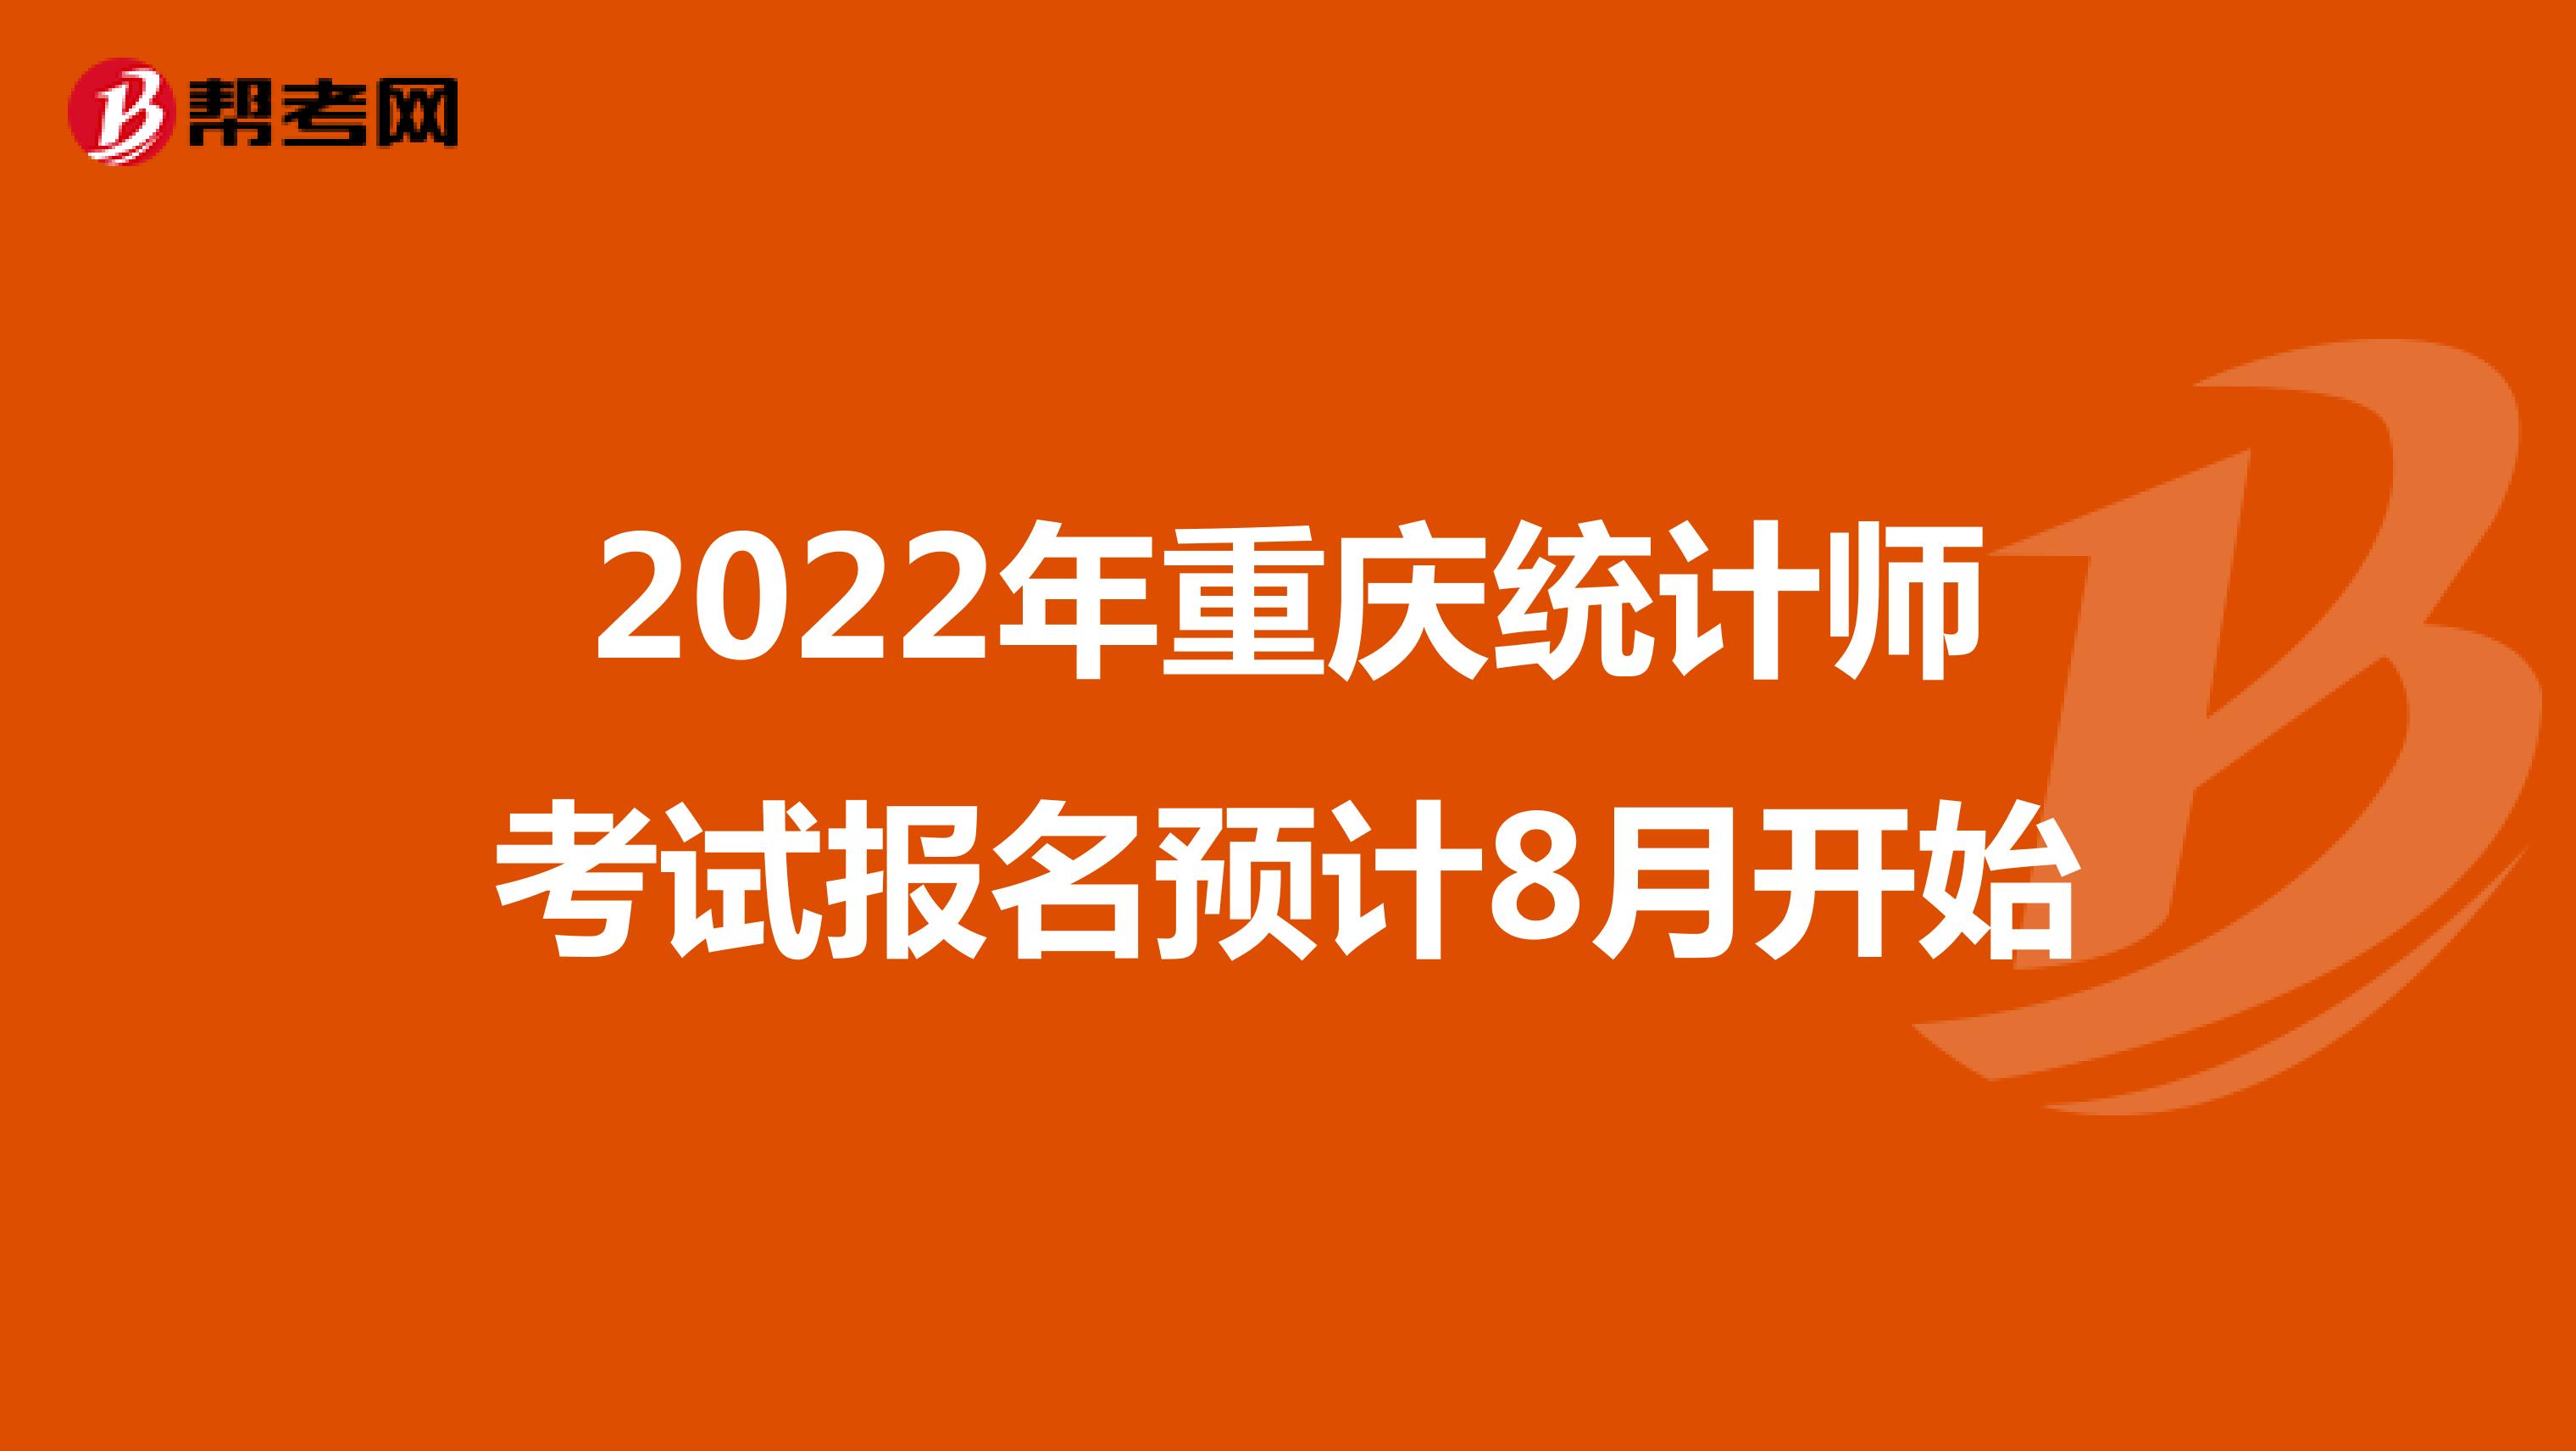 2022年重庆统计师考试报名预计8月开始